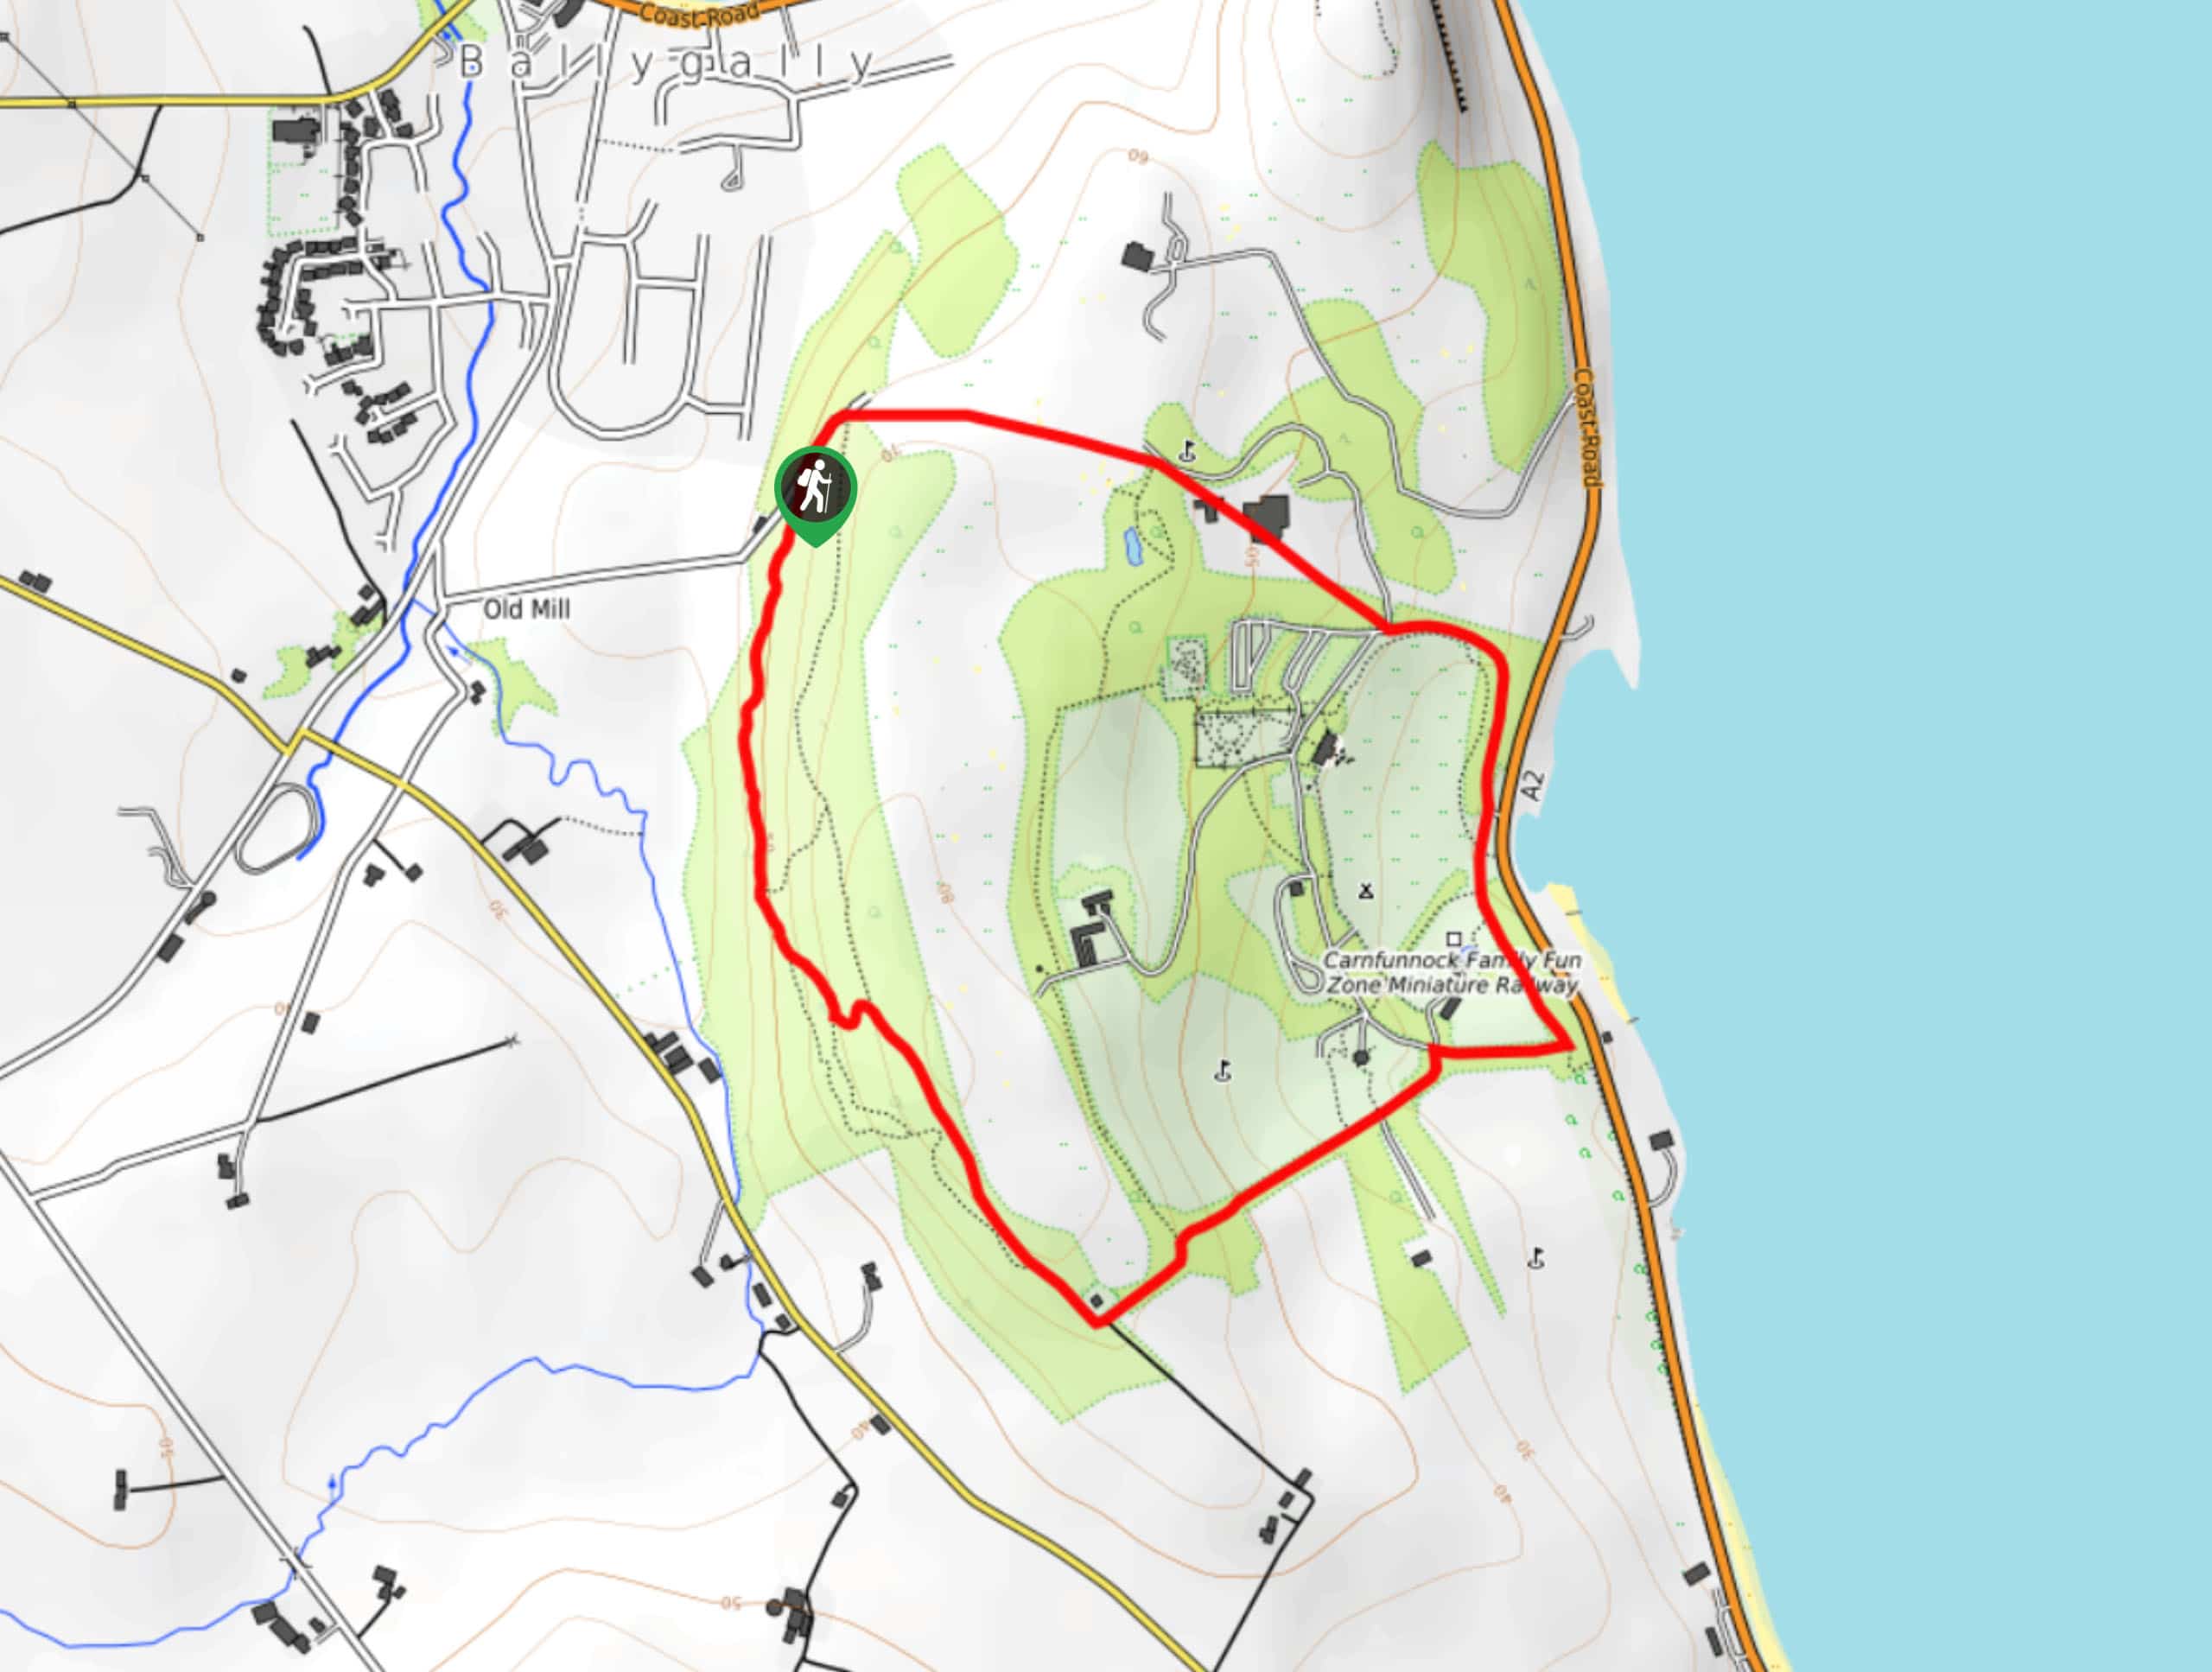 Carnfunnock Country Park Circular Walk Map